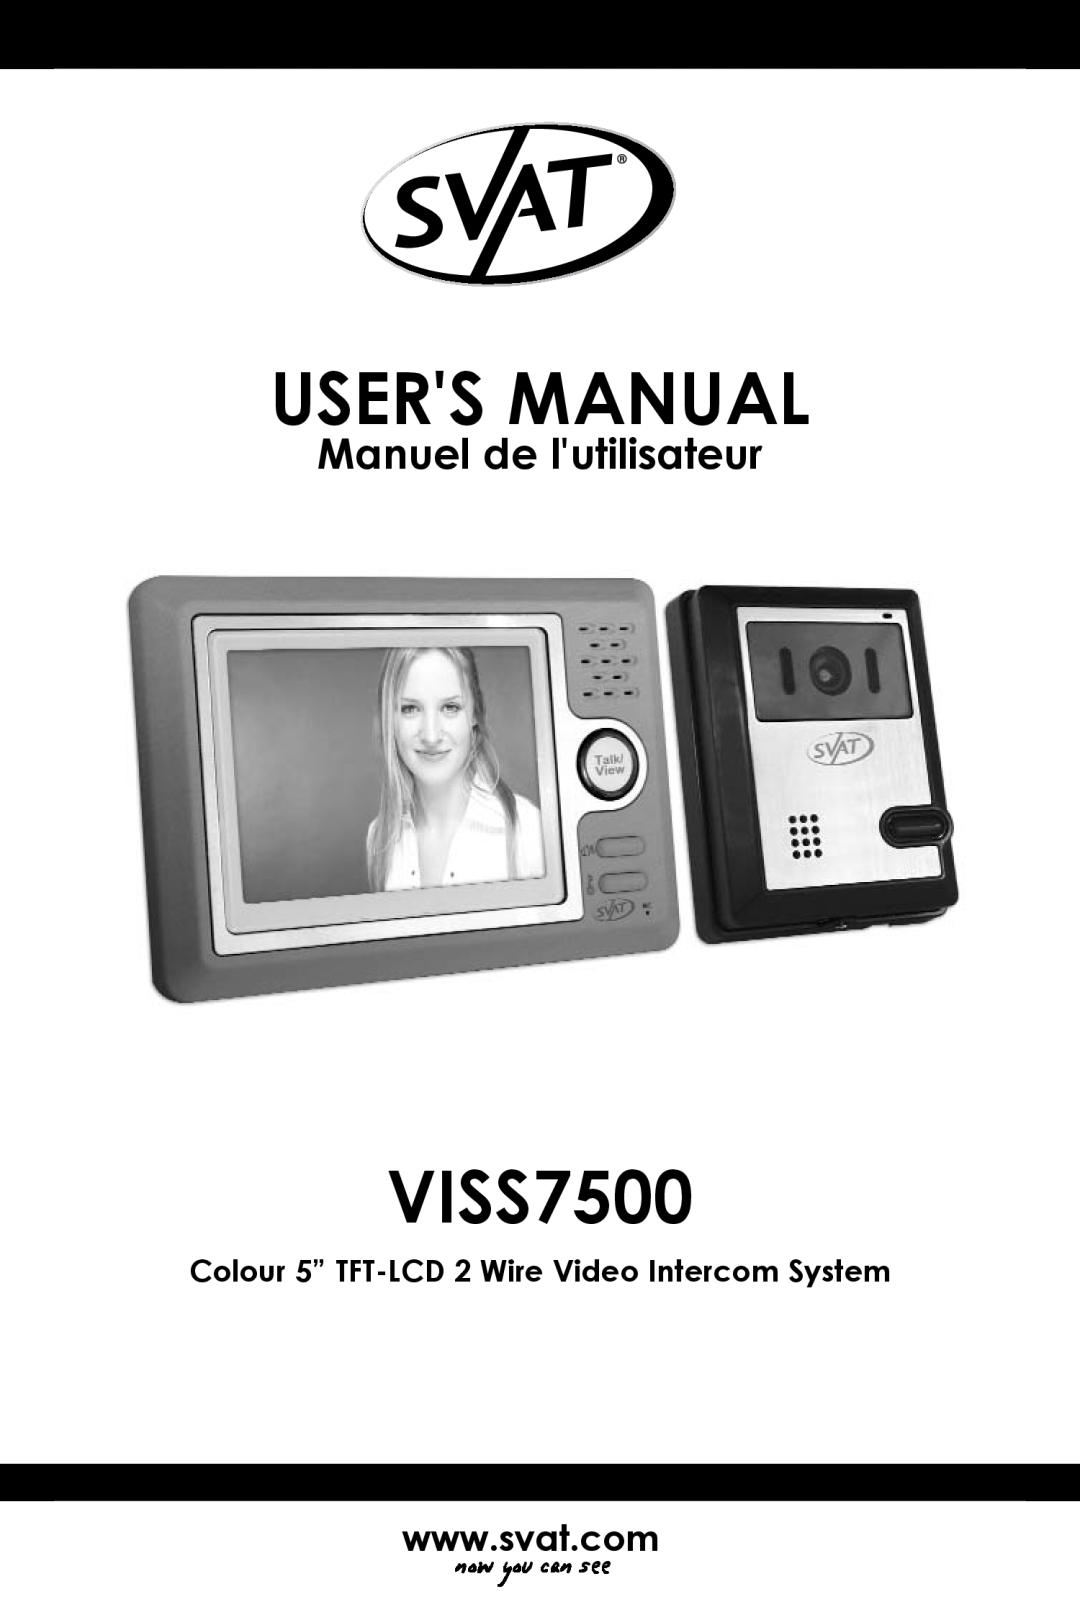 SVAT Electronics VISS7500 user manual Colour 5” TFT-LCD2 Wire Video Intercom System, Manuel de lutilisateur 